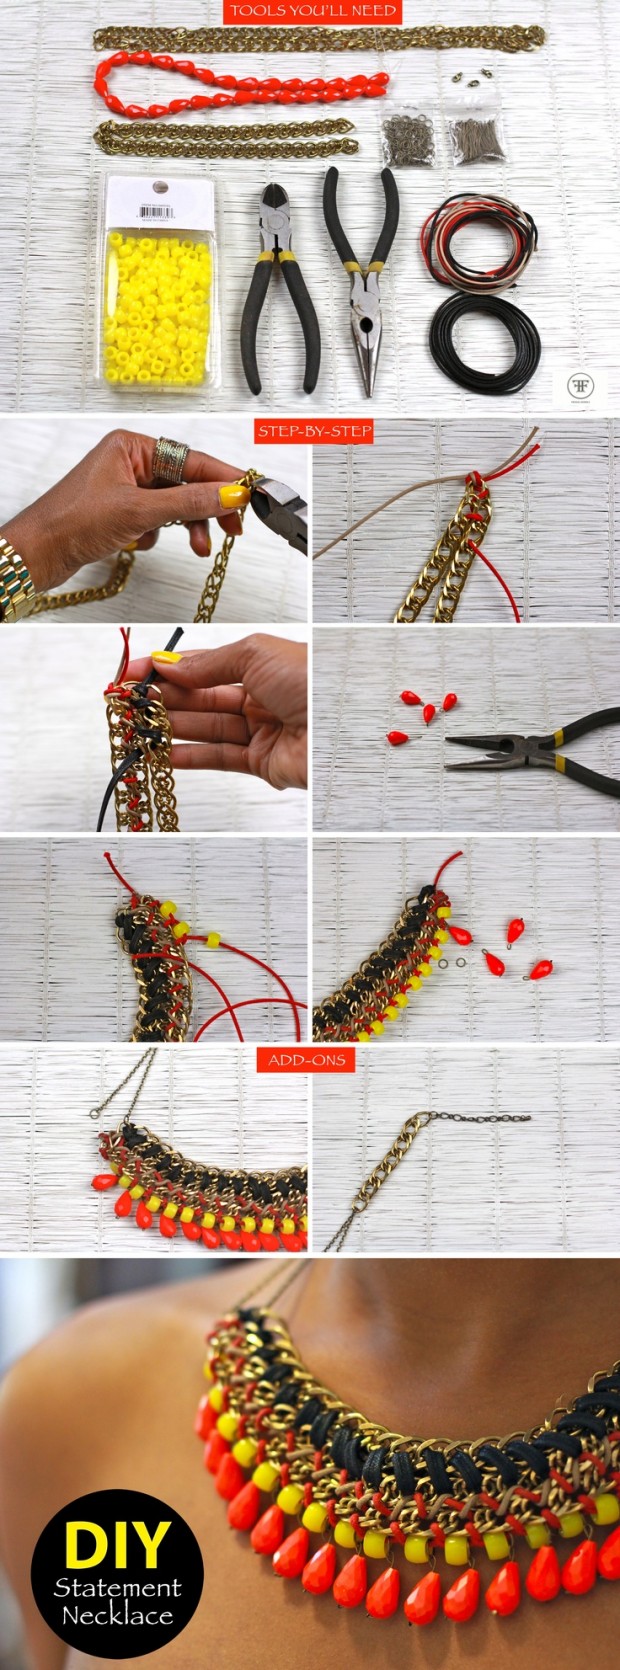 22-Gorgeous-DIY-Necklaces-19-620x1670